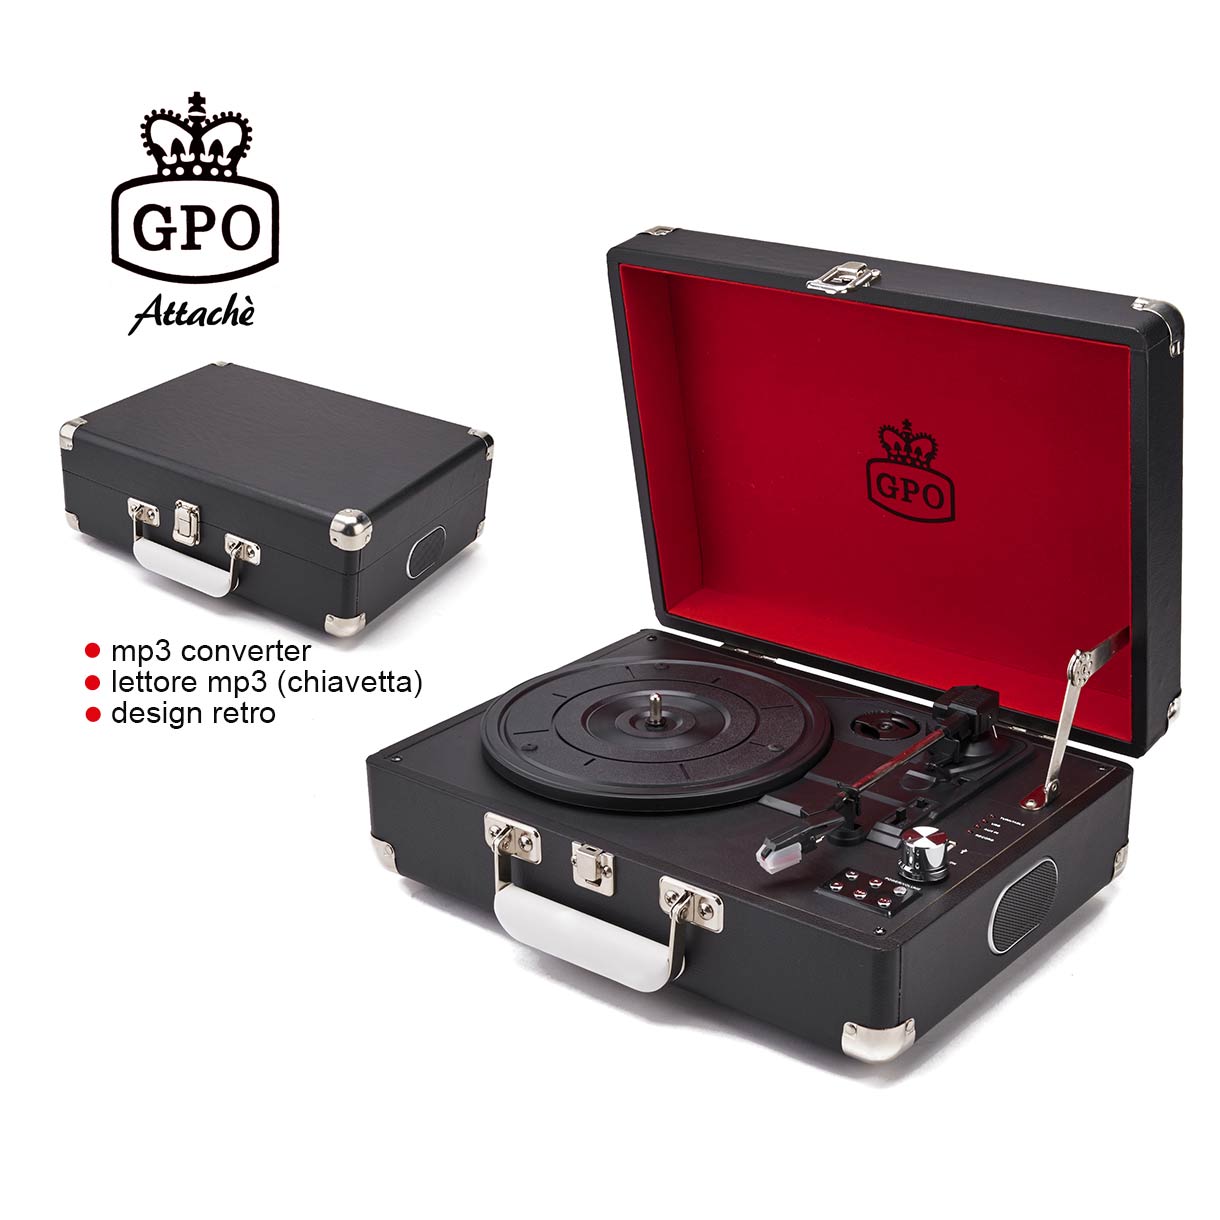 Audio & Hi-Fi GPO: ATTACHEBLA - Briefcase Retro Style Three-Speed Portable Vinyl Turntable With Built-In Stereo Speakers (Giradischi) NUOVO SIGILLATO, EDIZIONE DEL 22/06/2017 SUBITO DISPONIBILE